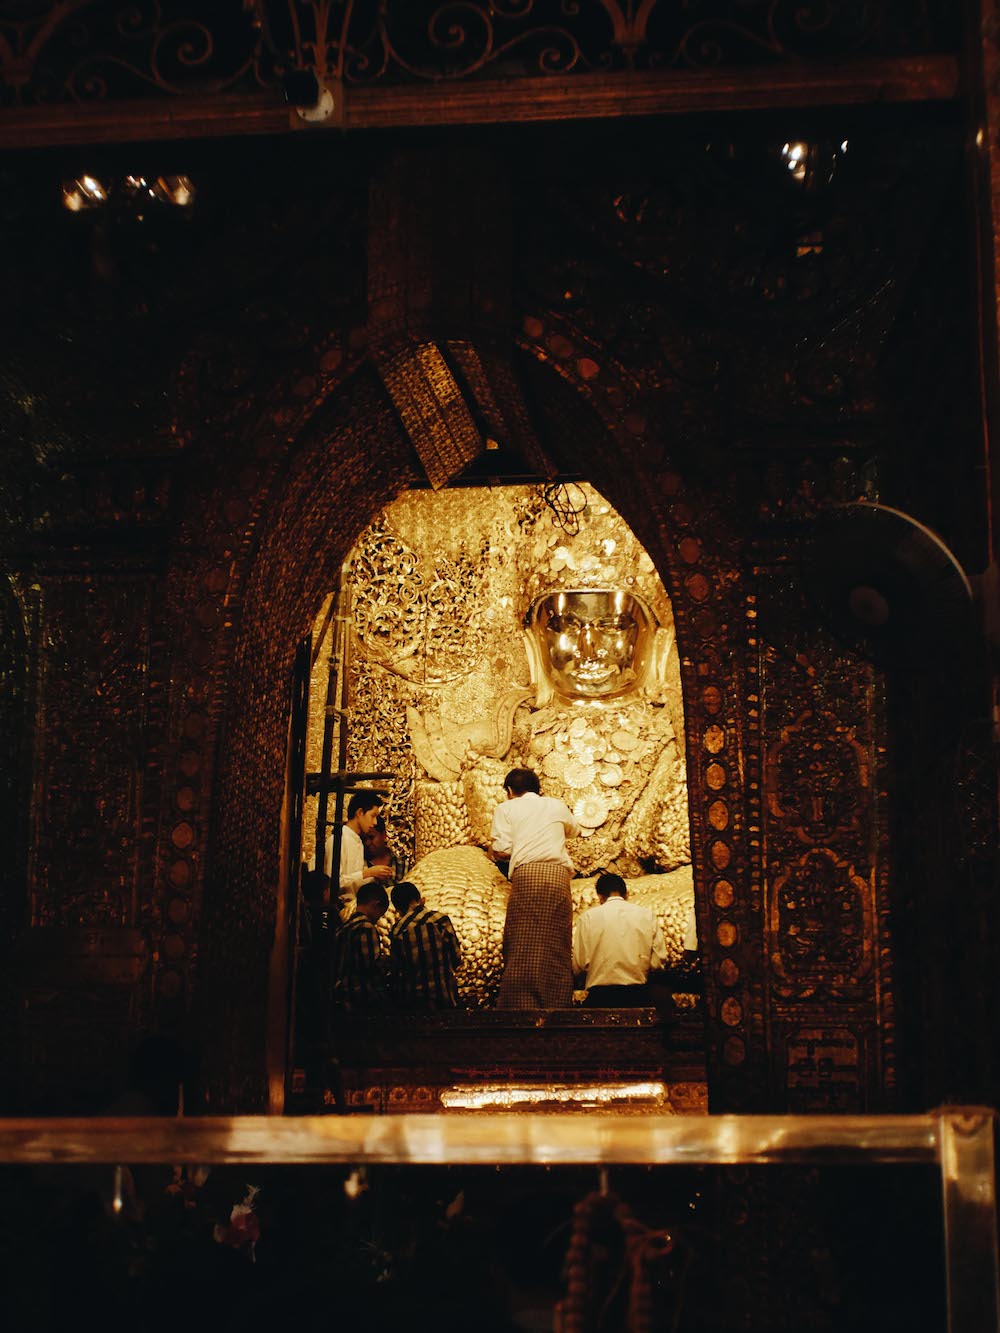 Maha Myat Muni Buddha Image